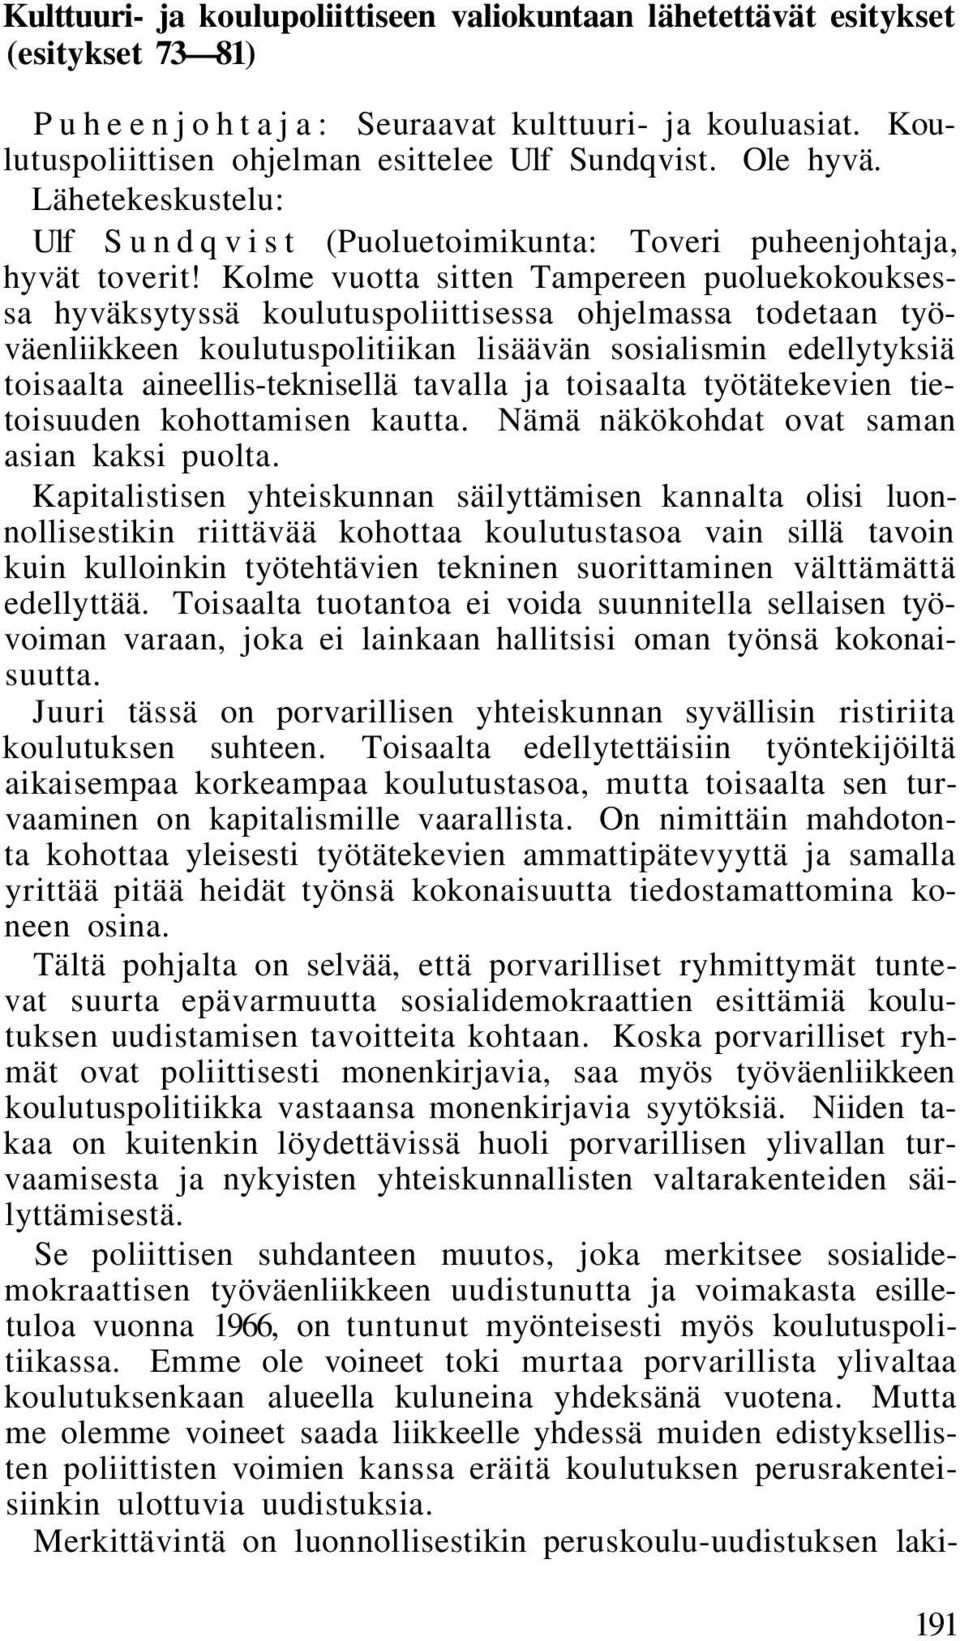 Kolme vuotta sitten Tampereen puoluekokouksessa hyväksytyssä koulutuspoliittisessa ohjelmassa todetaan työväenliikkeen koulutuspolitiikan lisäävän sosialismin edellytyksiä toisaalta